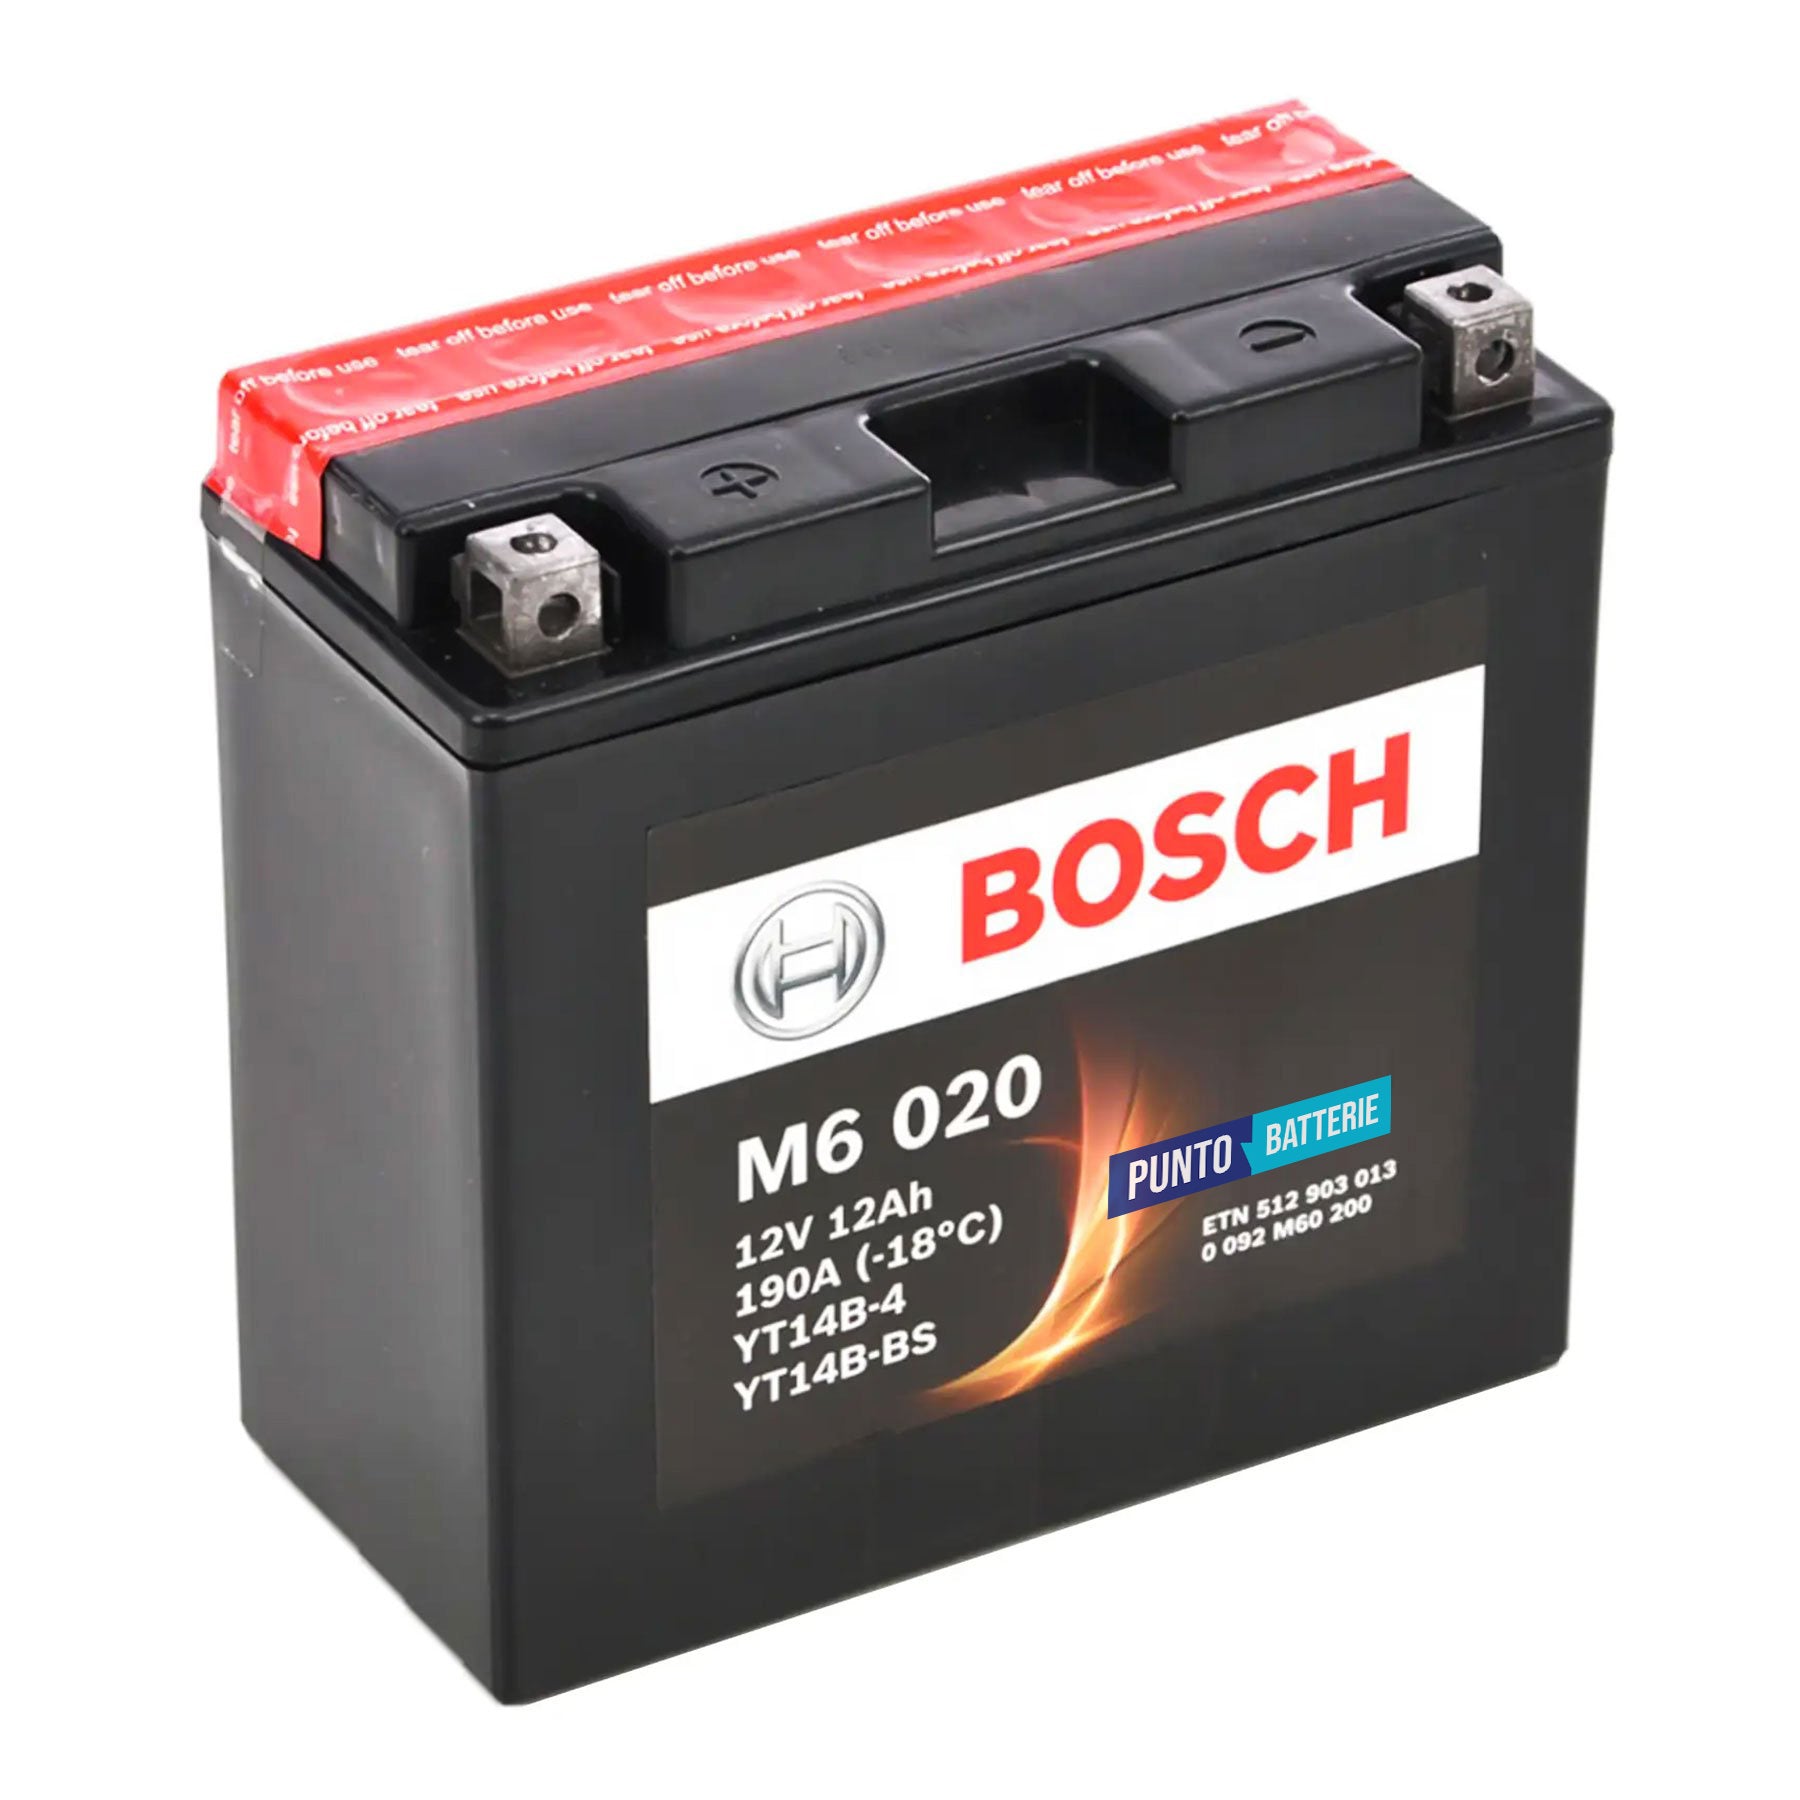 Batteria originale Bosch M6 M6020, dimensioni 150 x 87 x 105, polo positivo a sinistra, 12 volt, 12 amperora, 190 ampere. Batteria per moto, scooter e powersport.